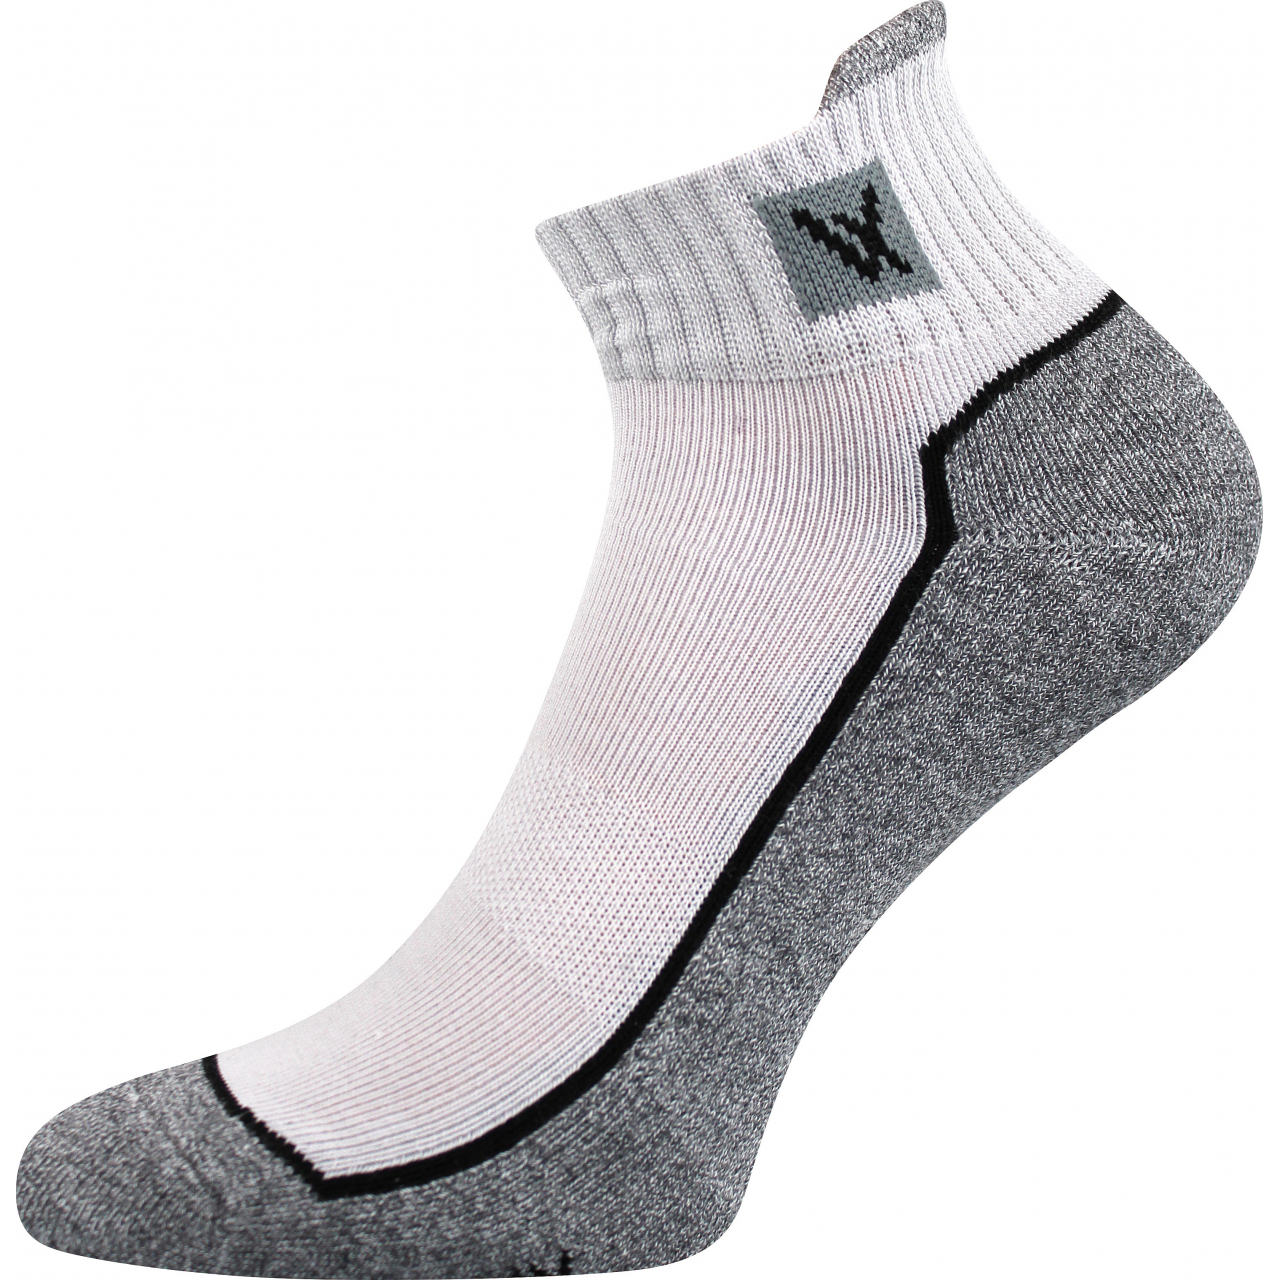 Ponožky unisex sportovní Voxx Nesty 01 - světle šedé-šedé, 43-46